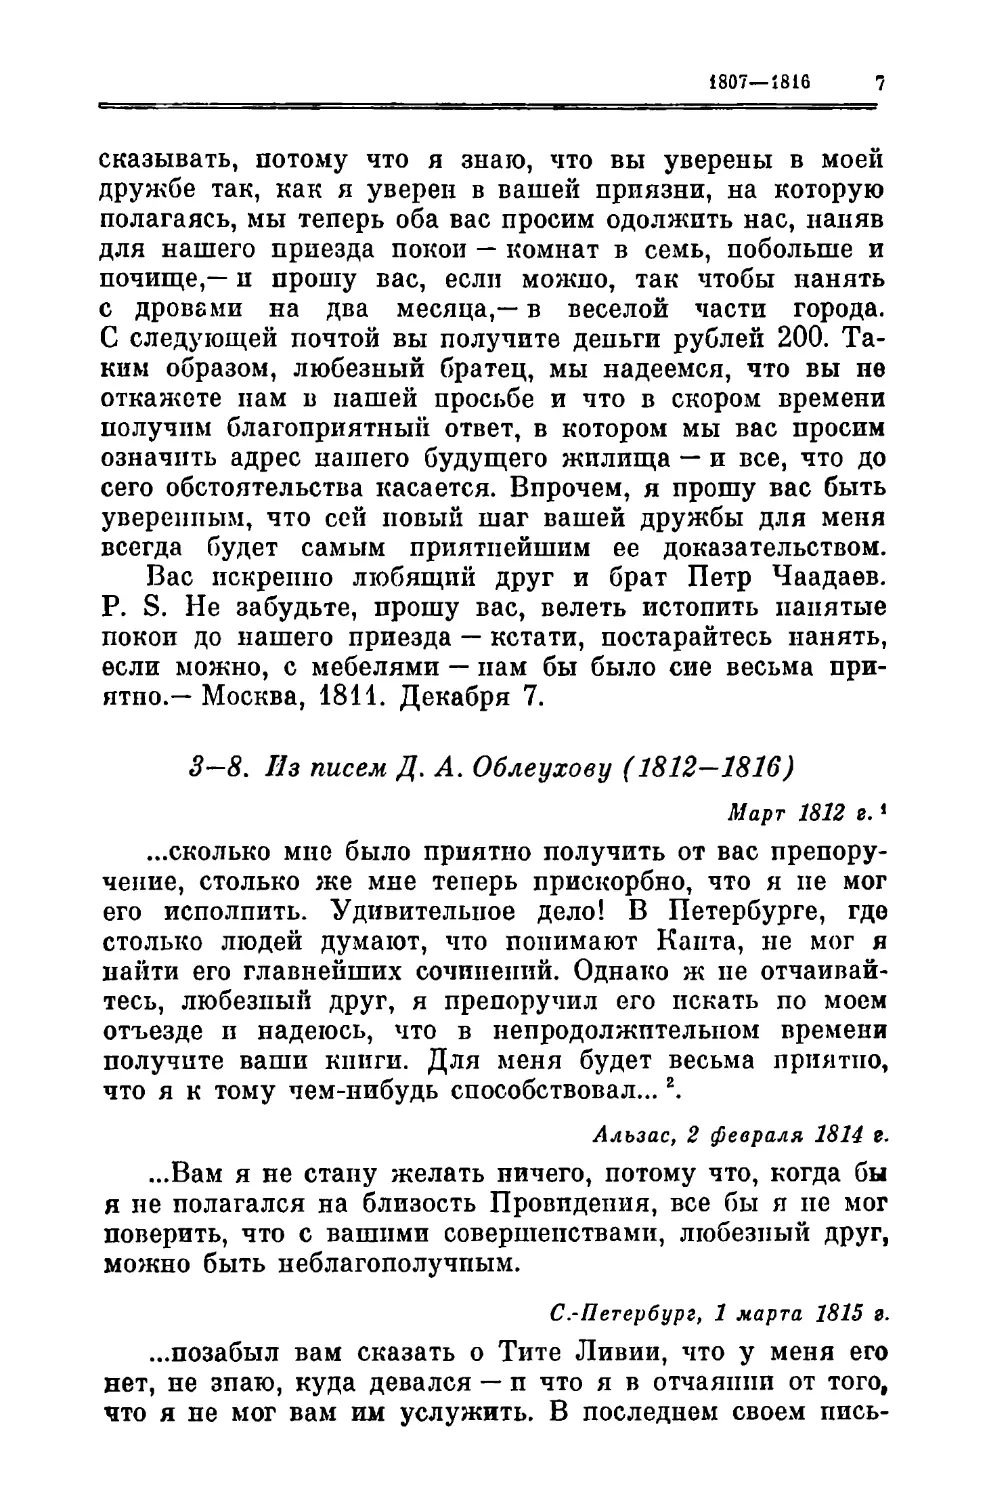 3—8. Облеухову Д.А. 1812—1816